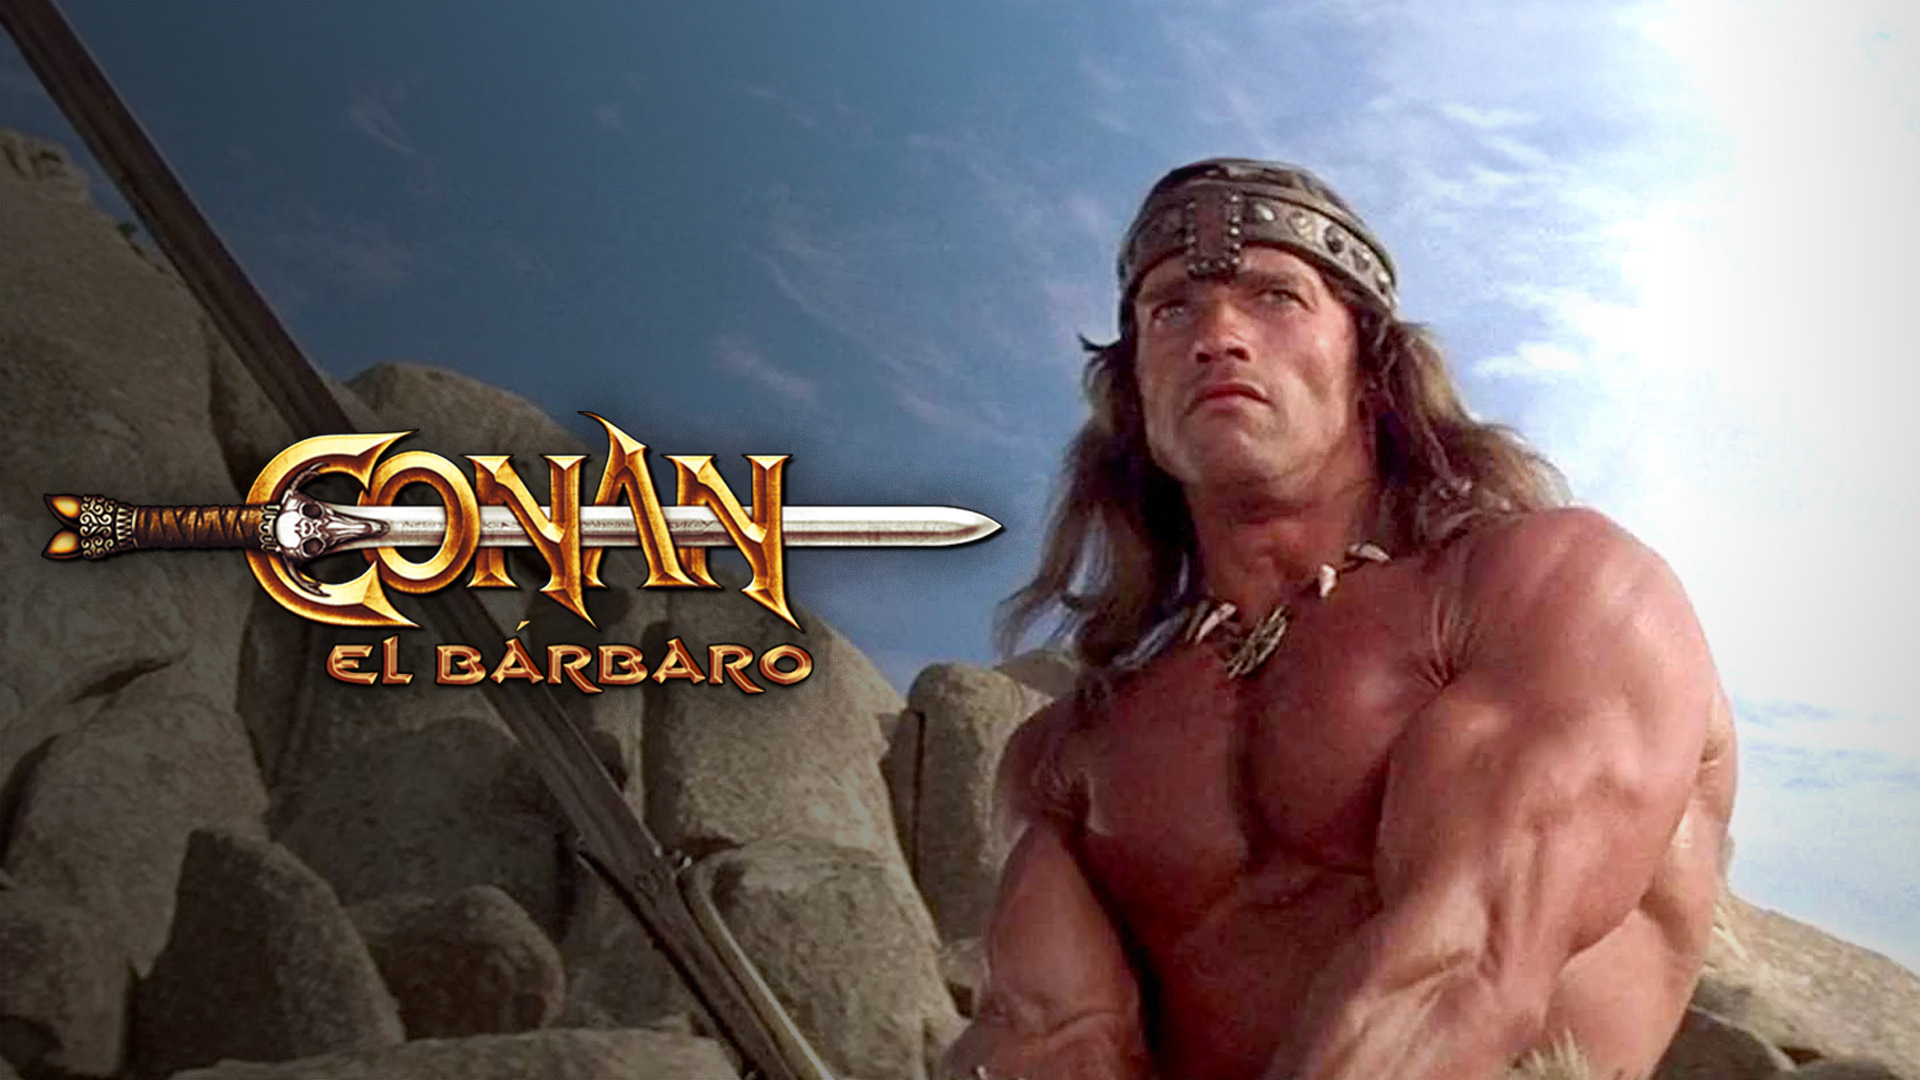 Días de cine clásico - Conan el Bárbaro (presentación)